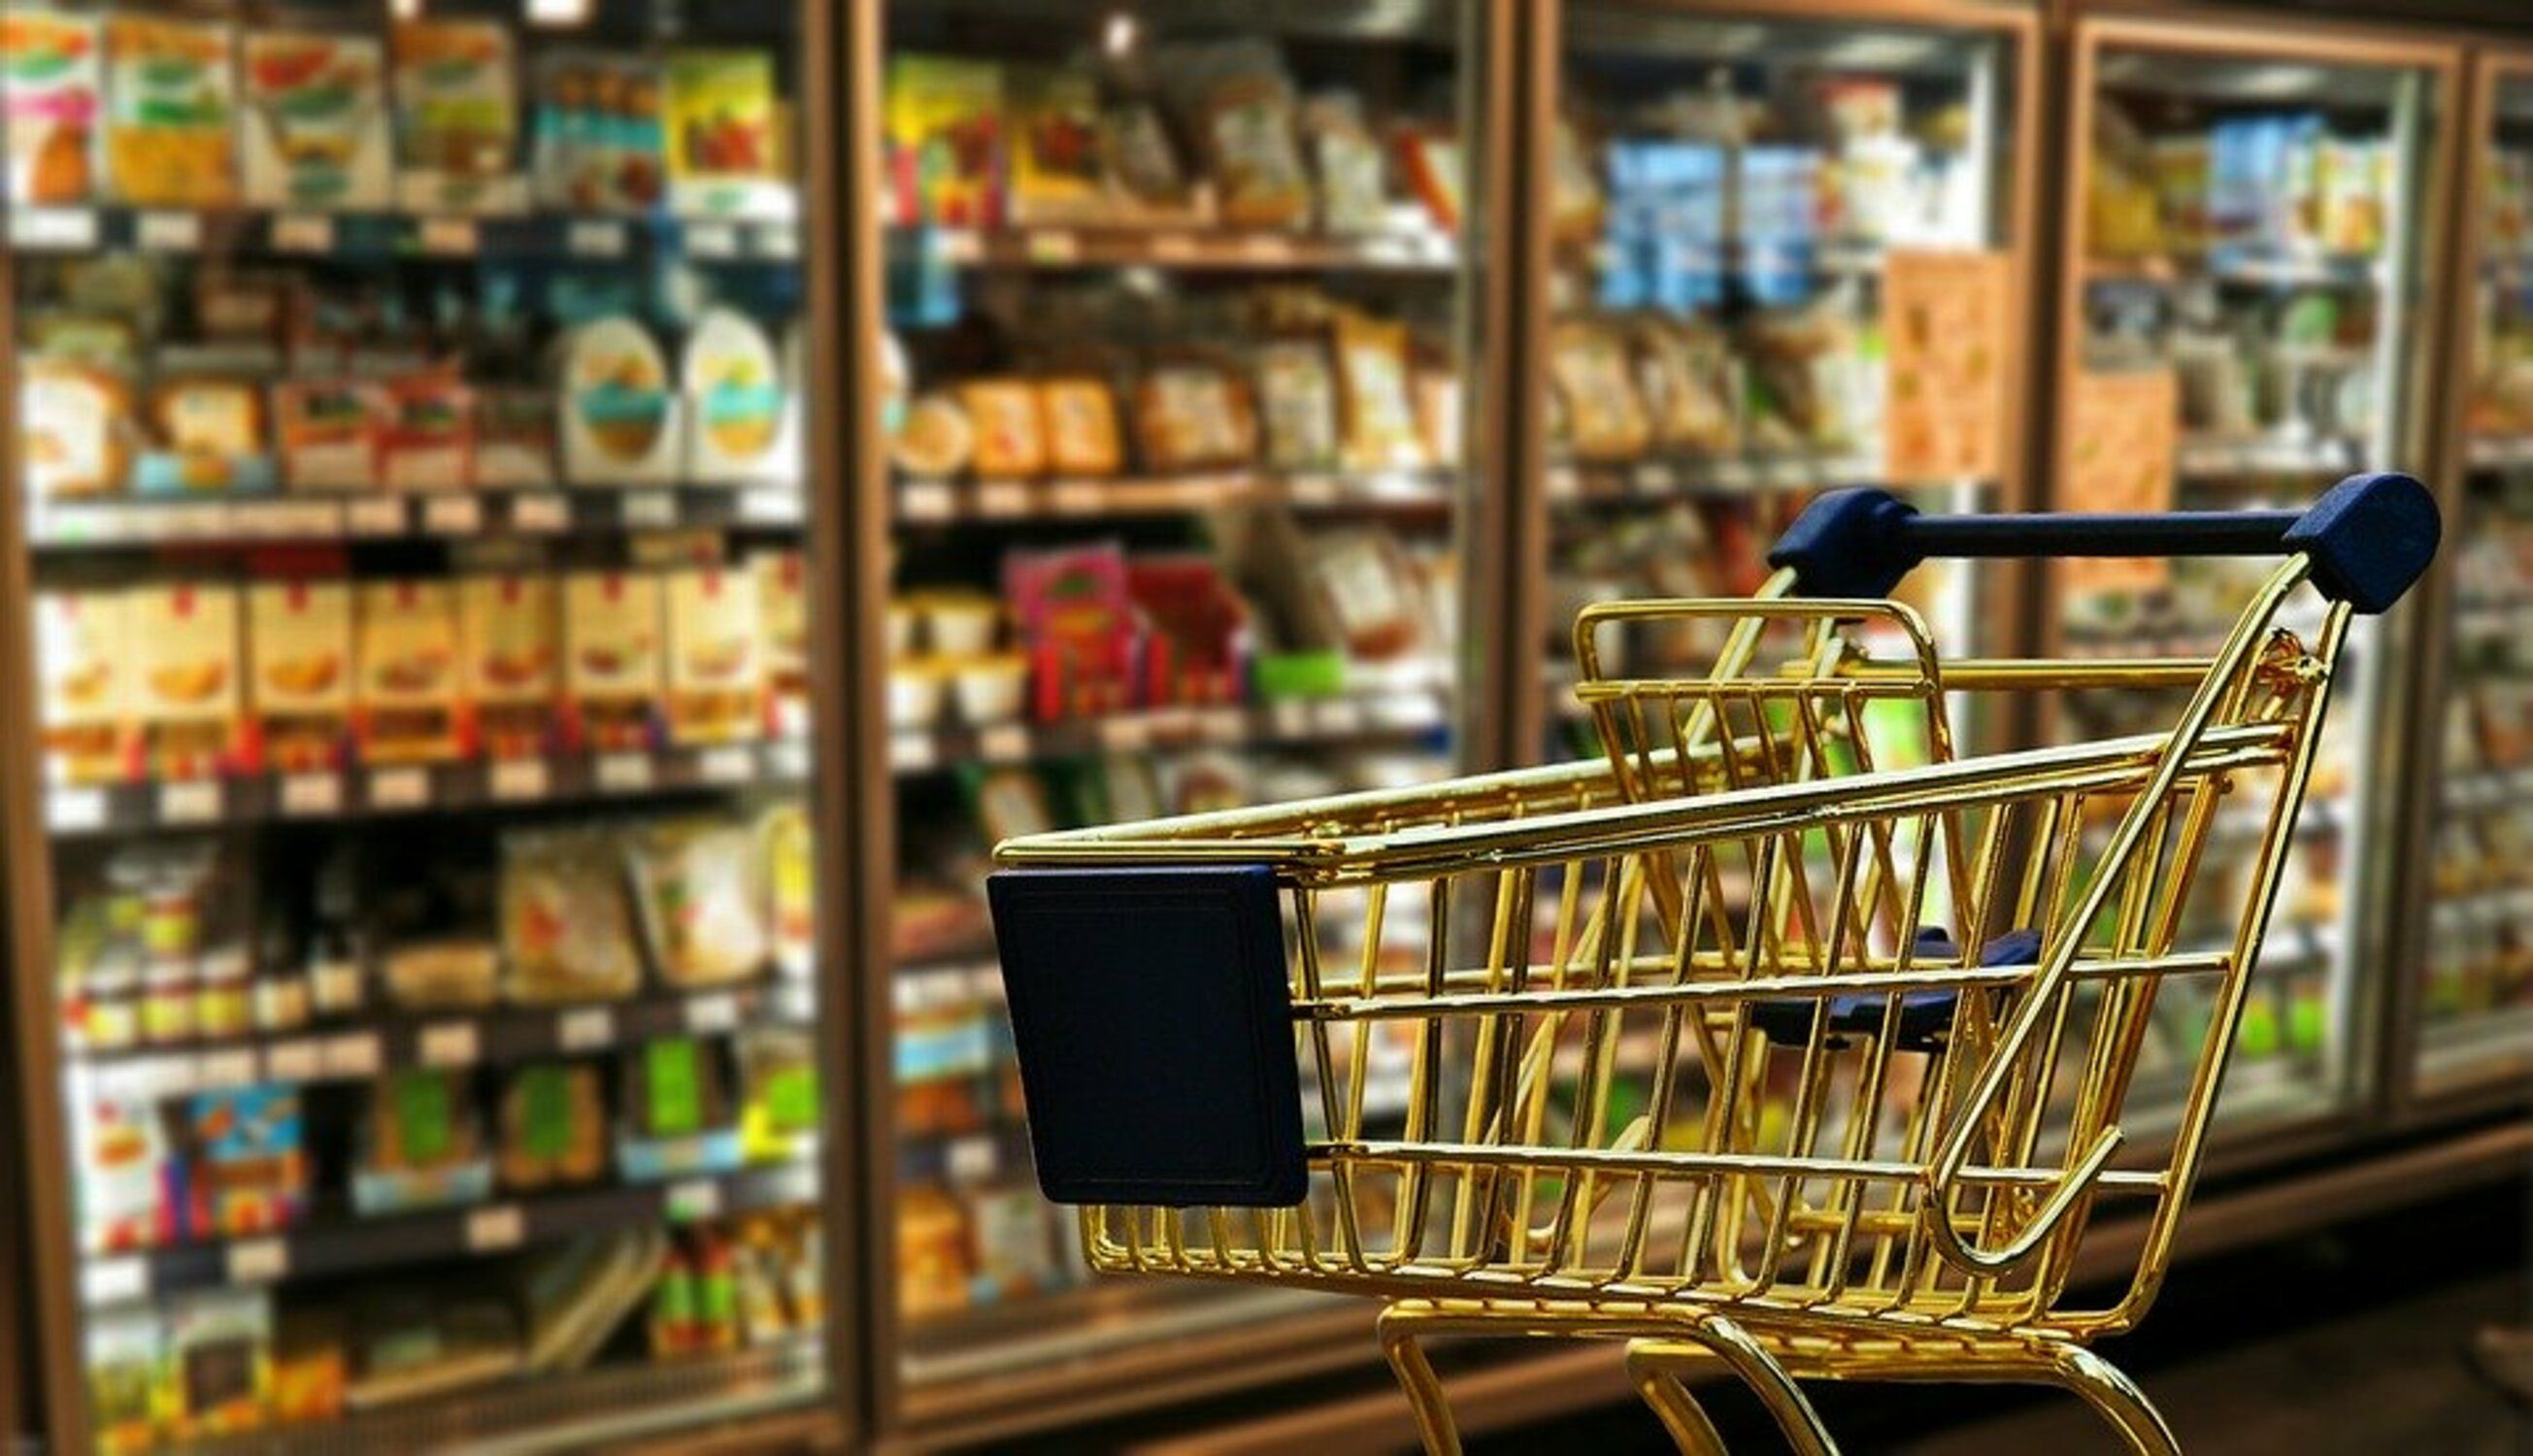 Horarios de los supermercados abiertos el 15 de agosto: Mercadona, Aldi, Lidl, Carrefour...